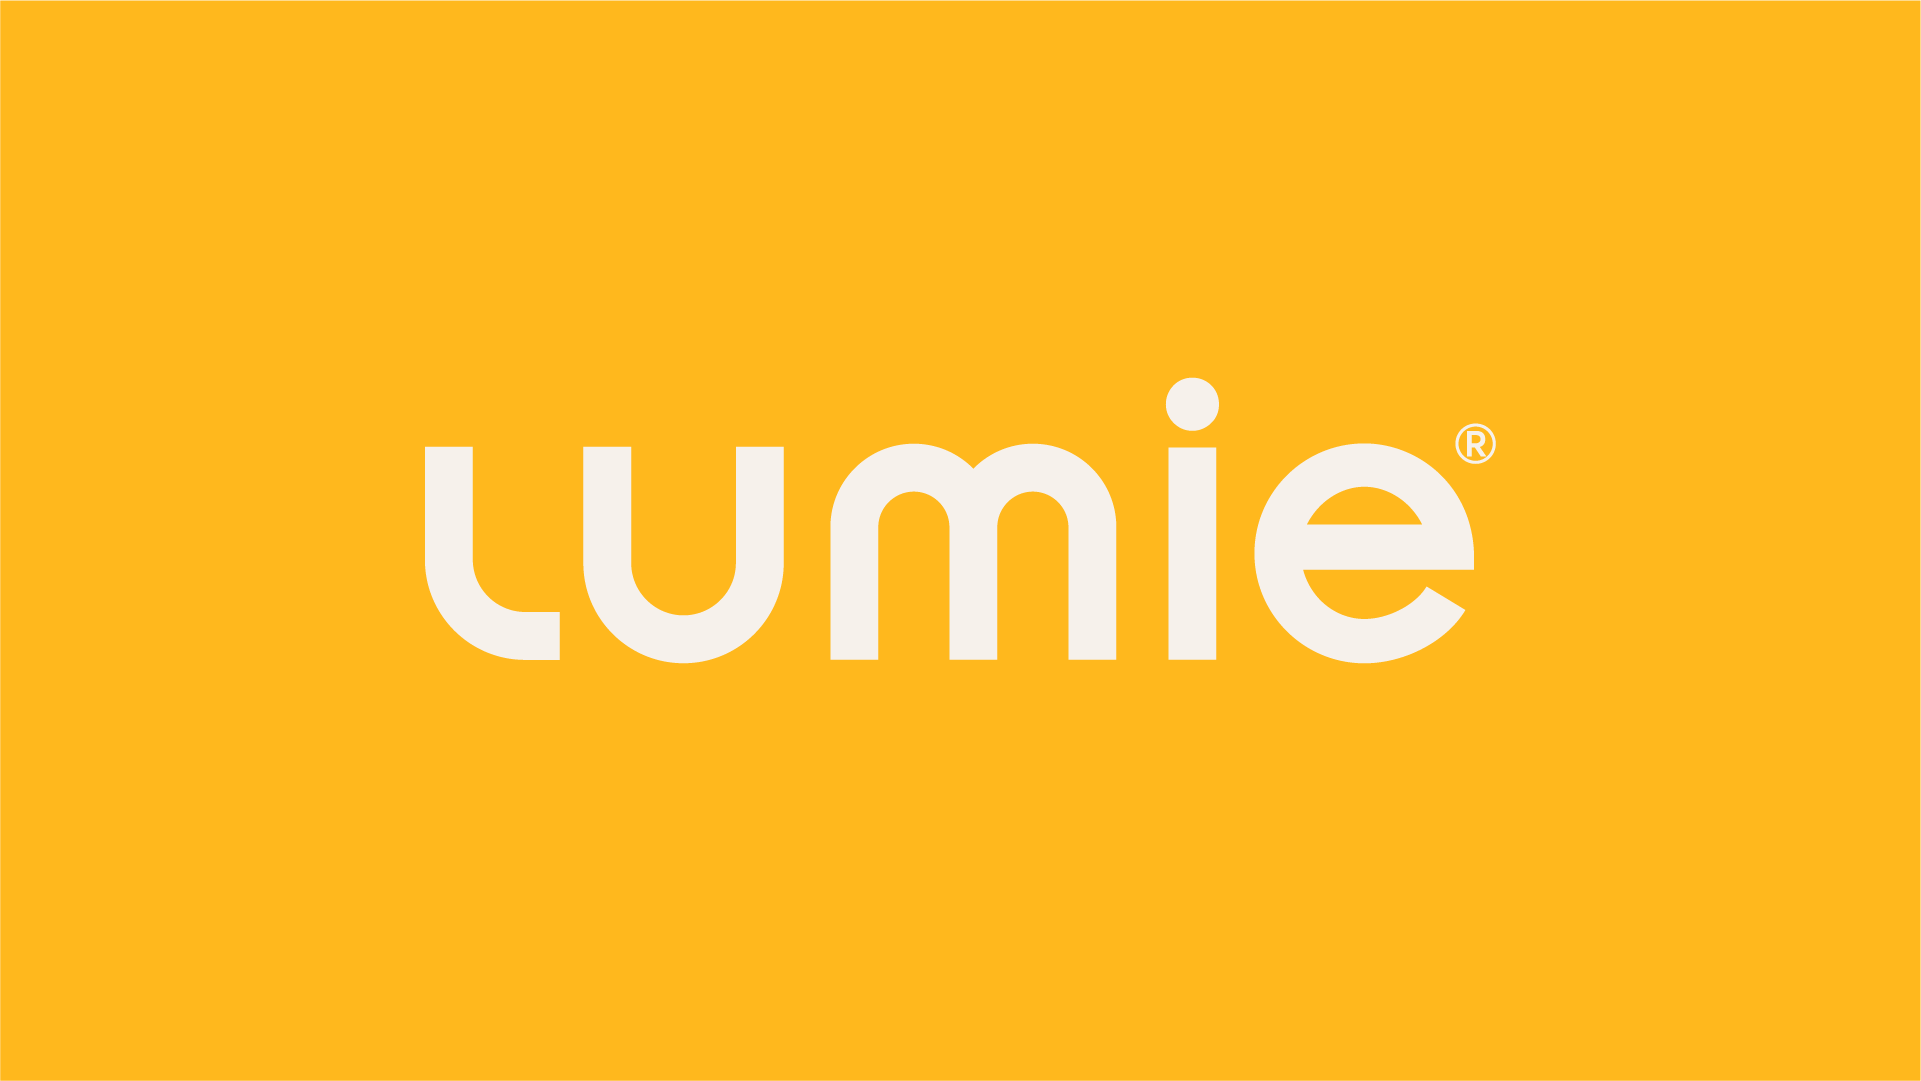 Lumie logo white text yellow background